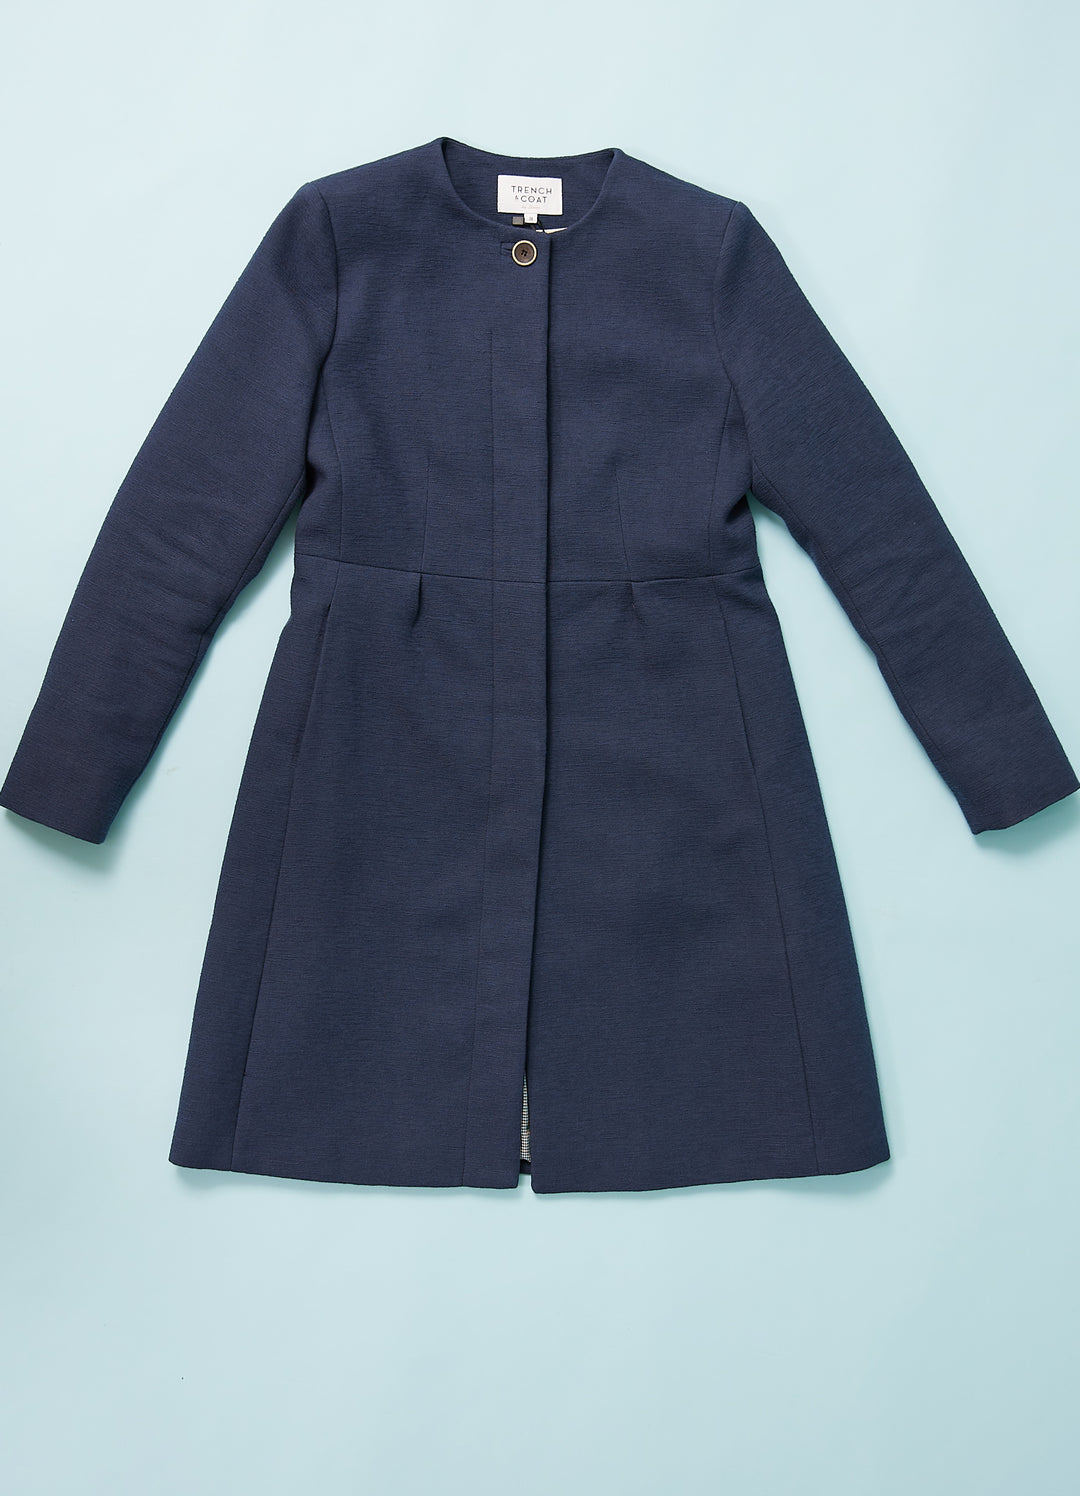 Coat Soveria - dark blue cotton